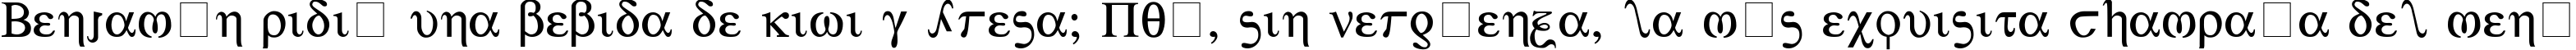 Пример написания шрифтом Greek текста на испанском